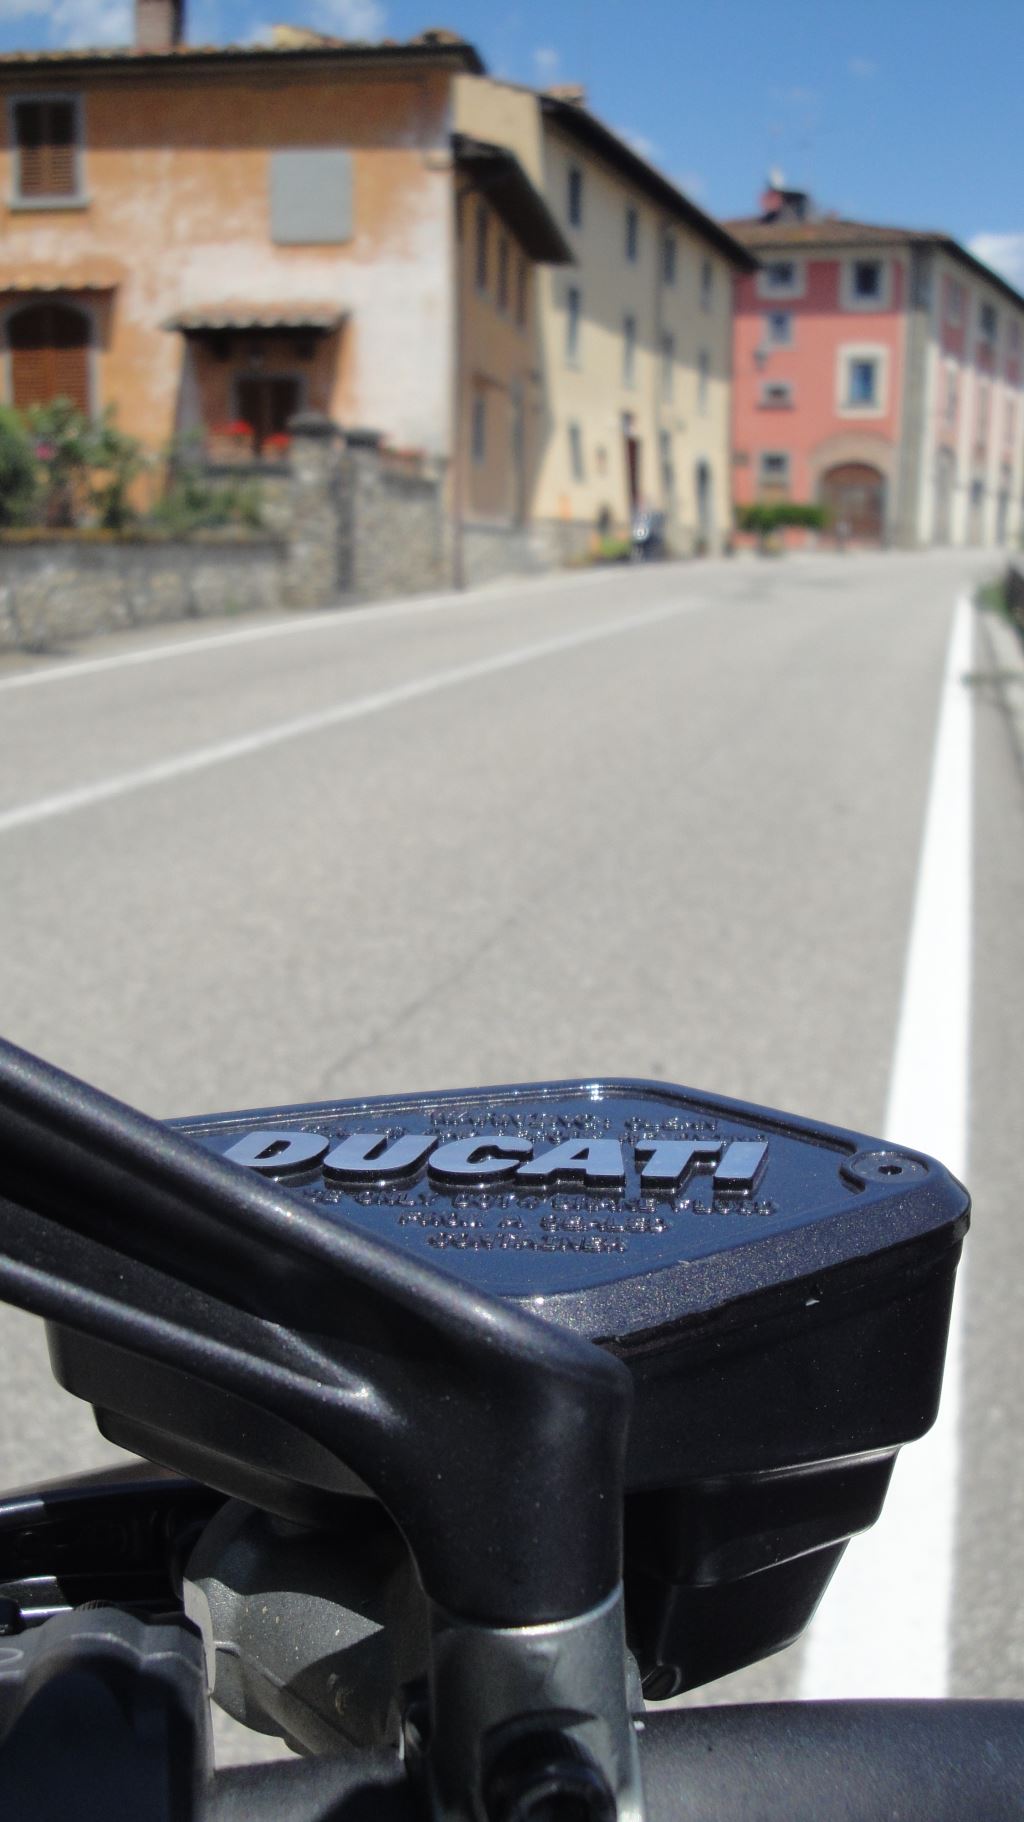 Ducati Diavel İle Dolce Vita 15. İçerik Fotoğrafı